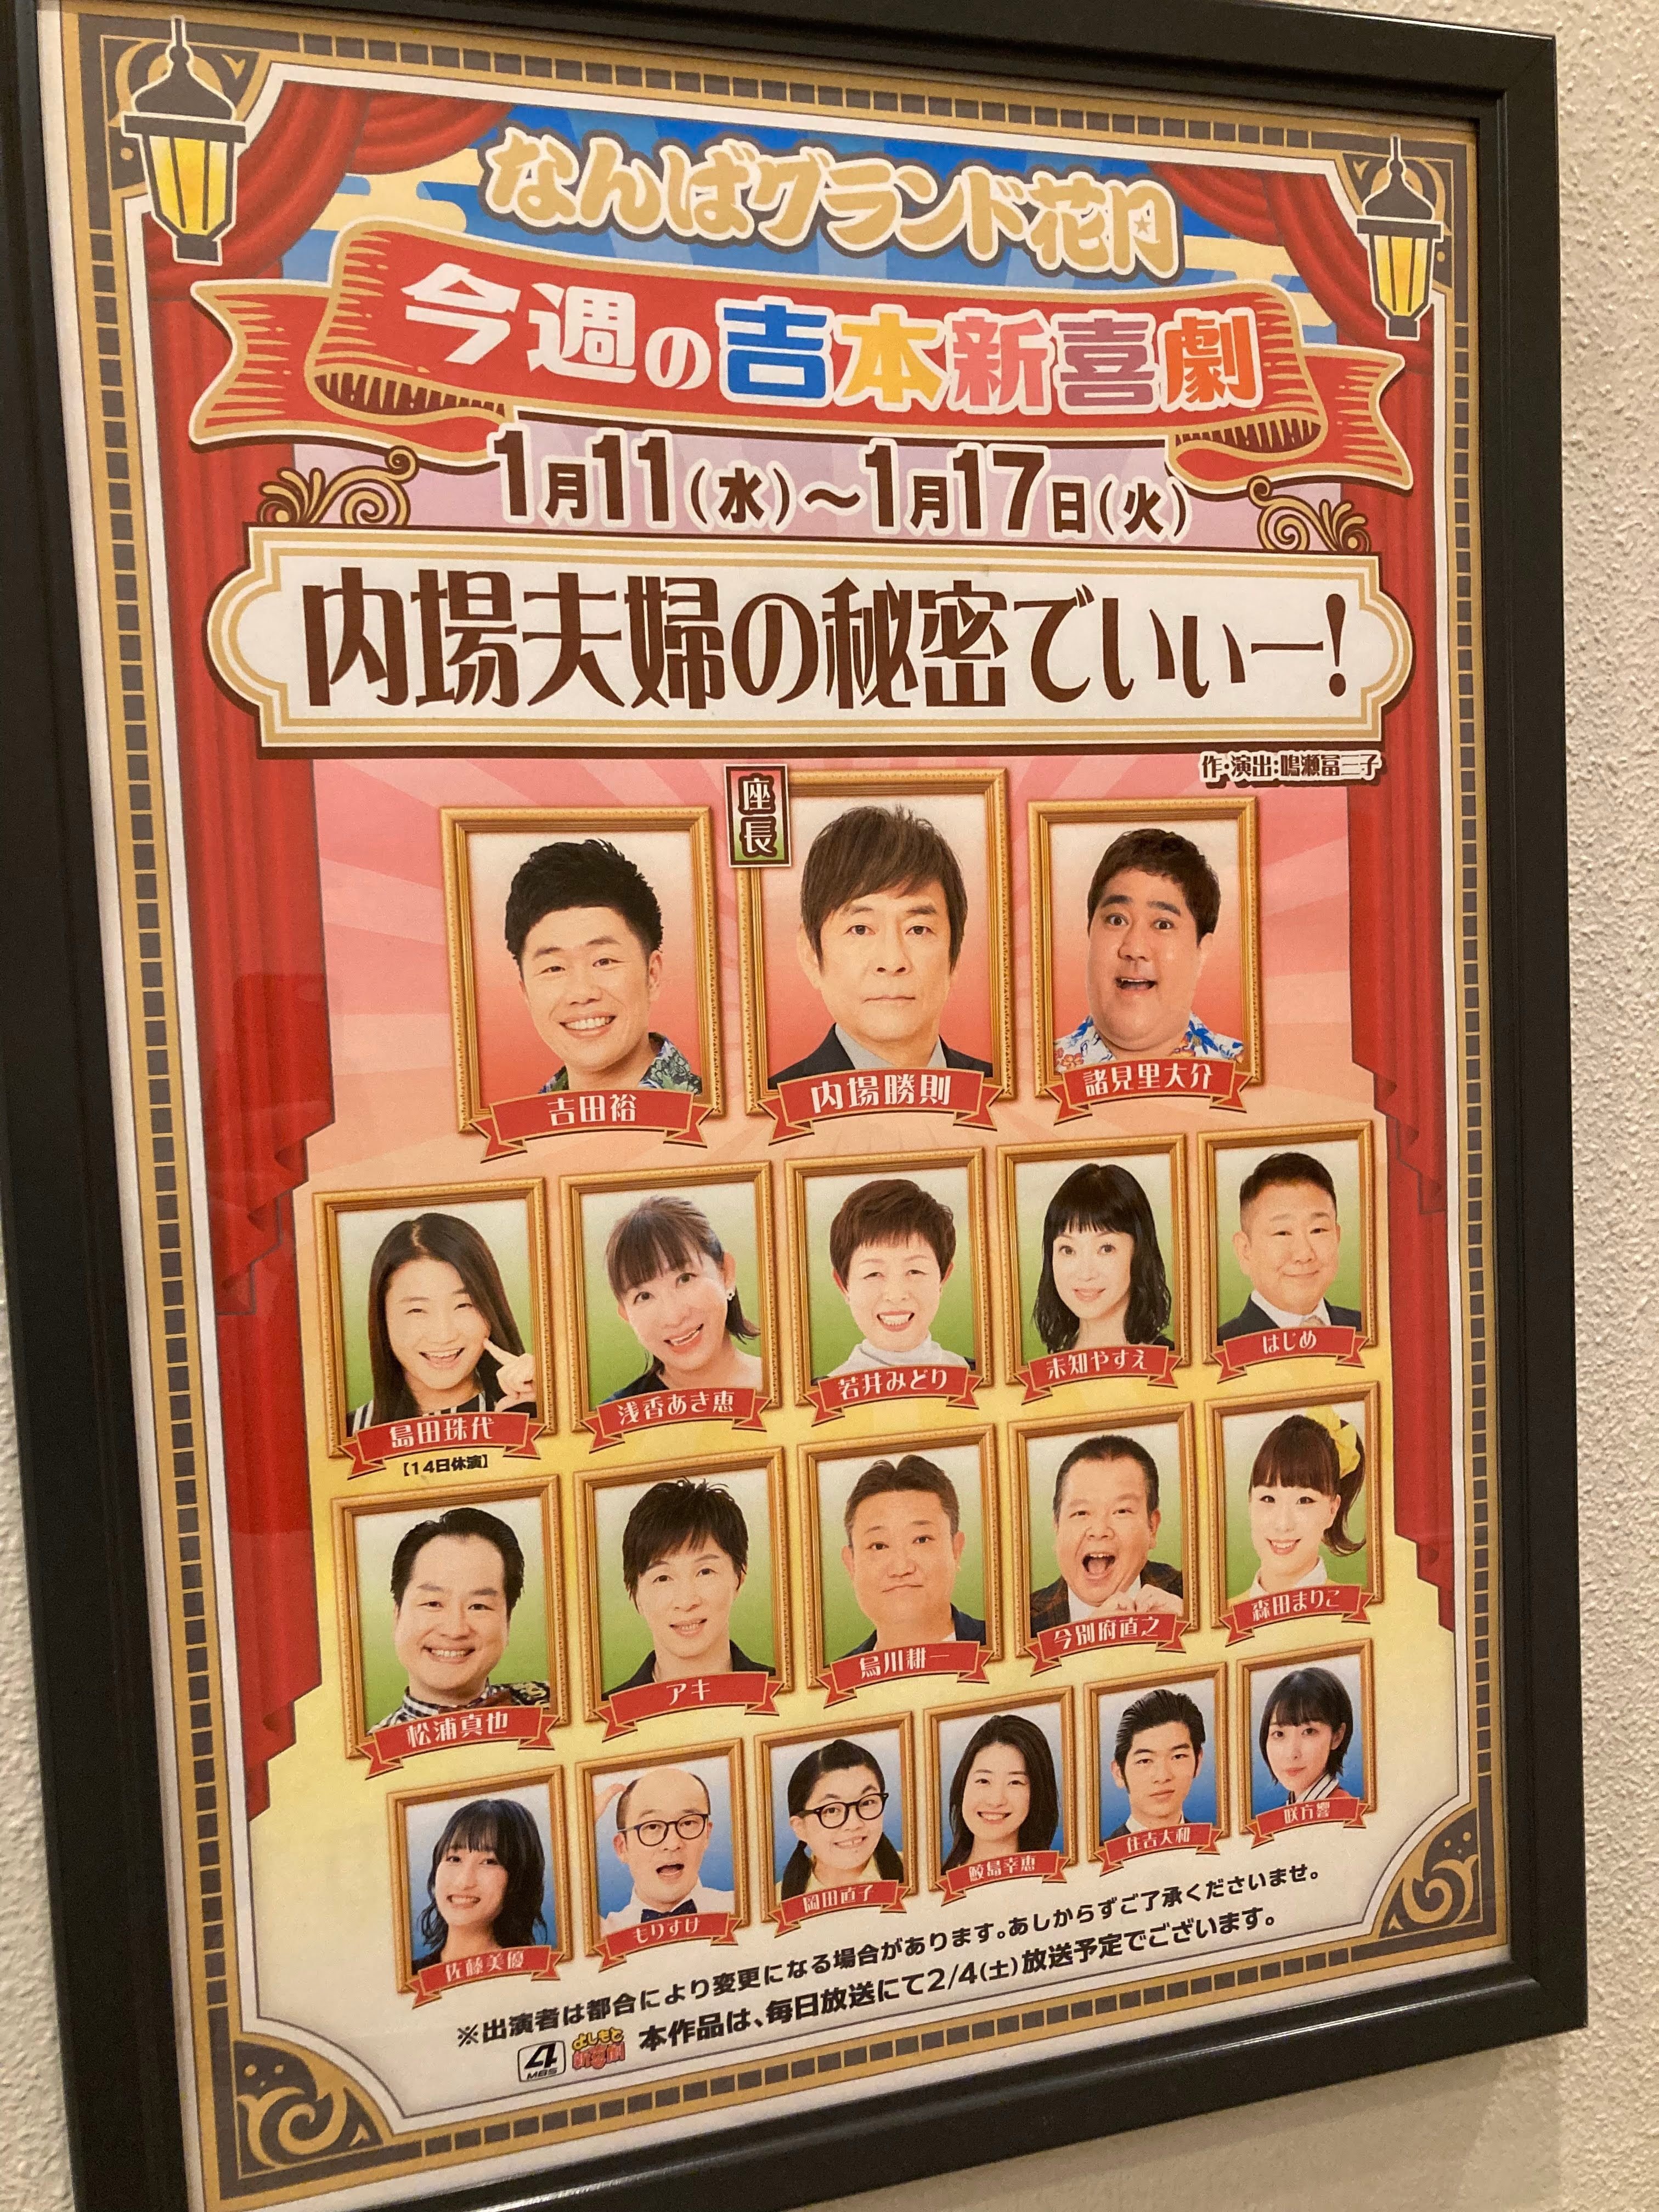 よしもと新喜劇 6月18日(日)ペアチケット - 演劇/芸能